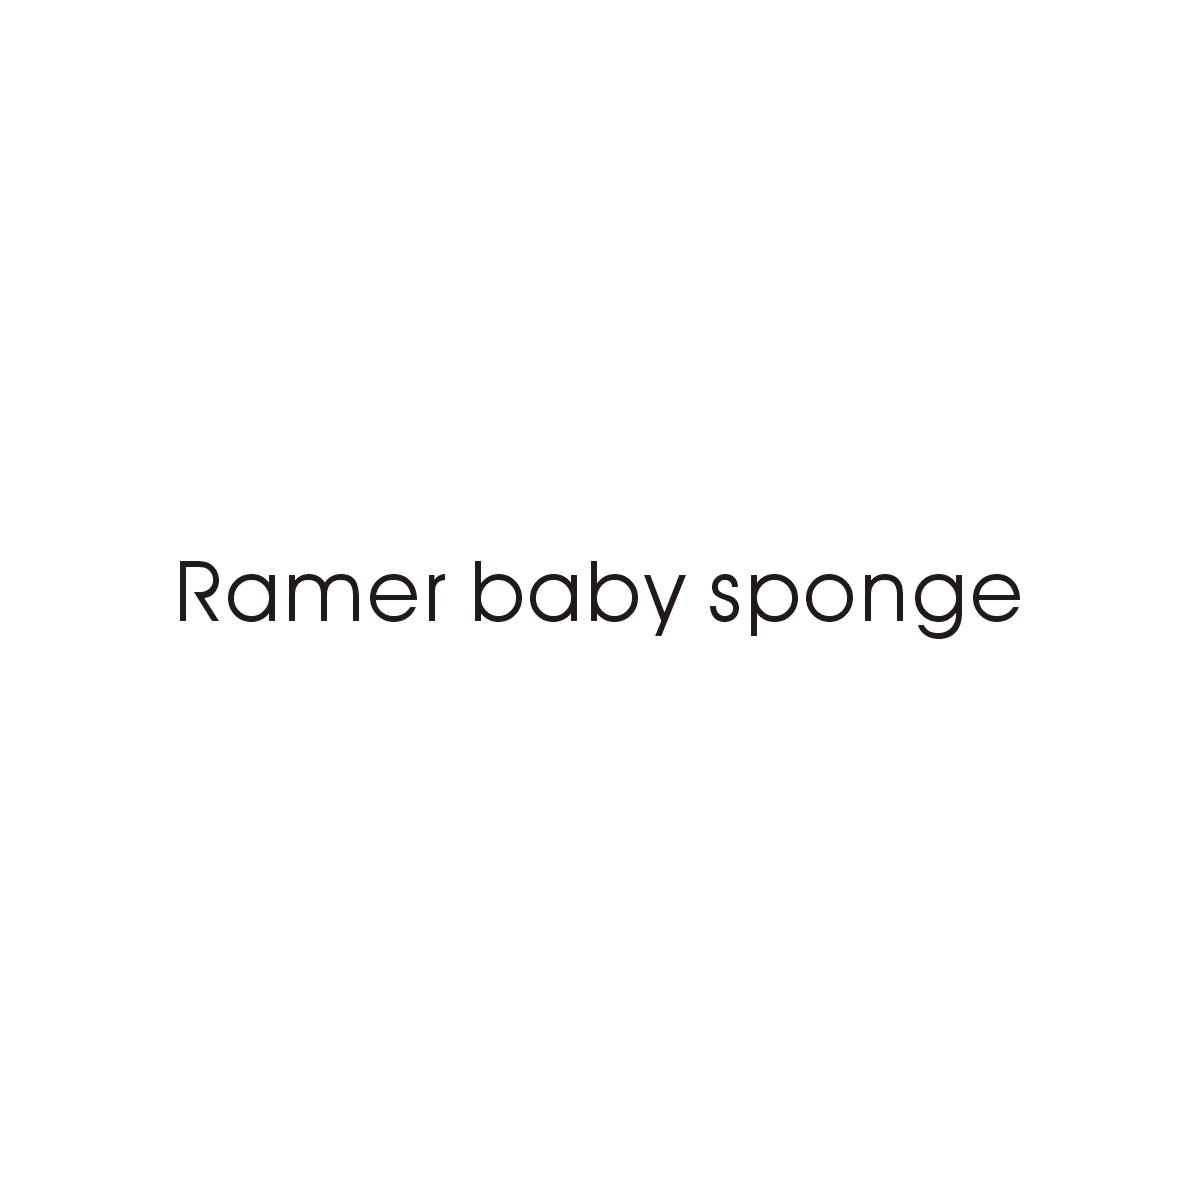 RAMER BABY SPONGE